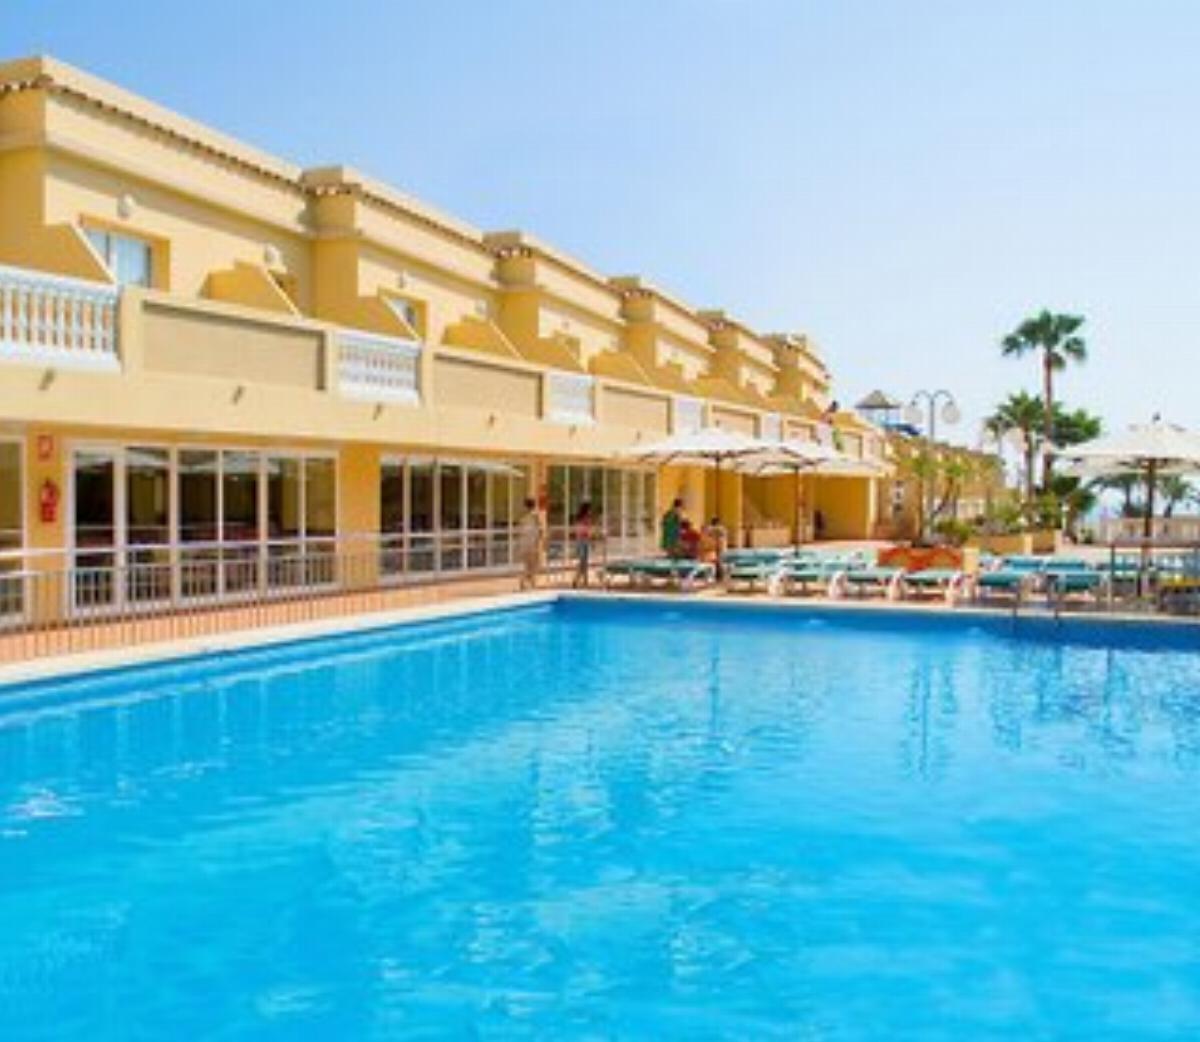 Rh Casablanca Suites Hotel Costa De Azahar Spain